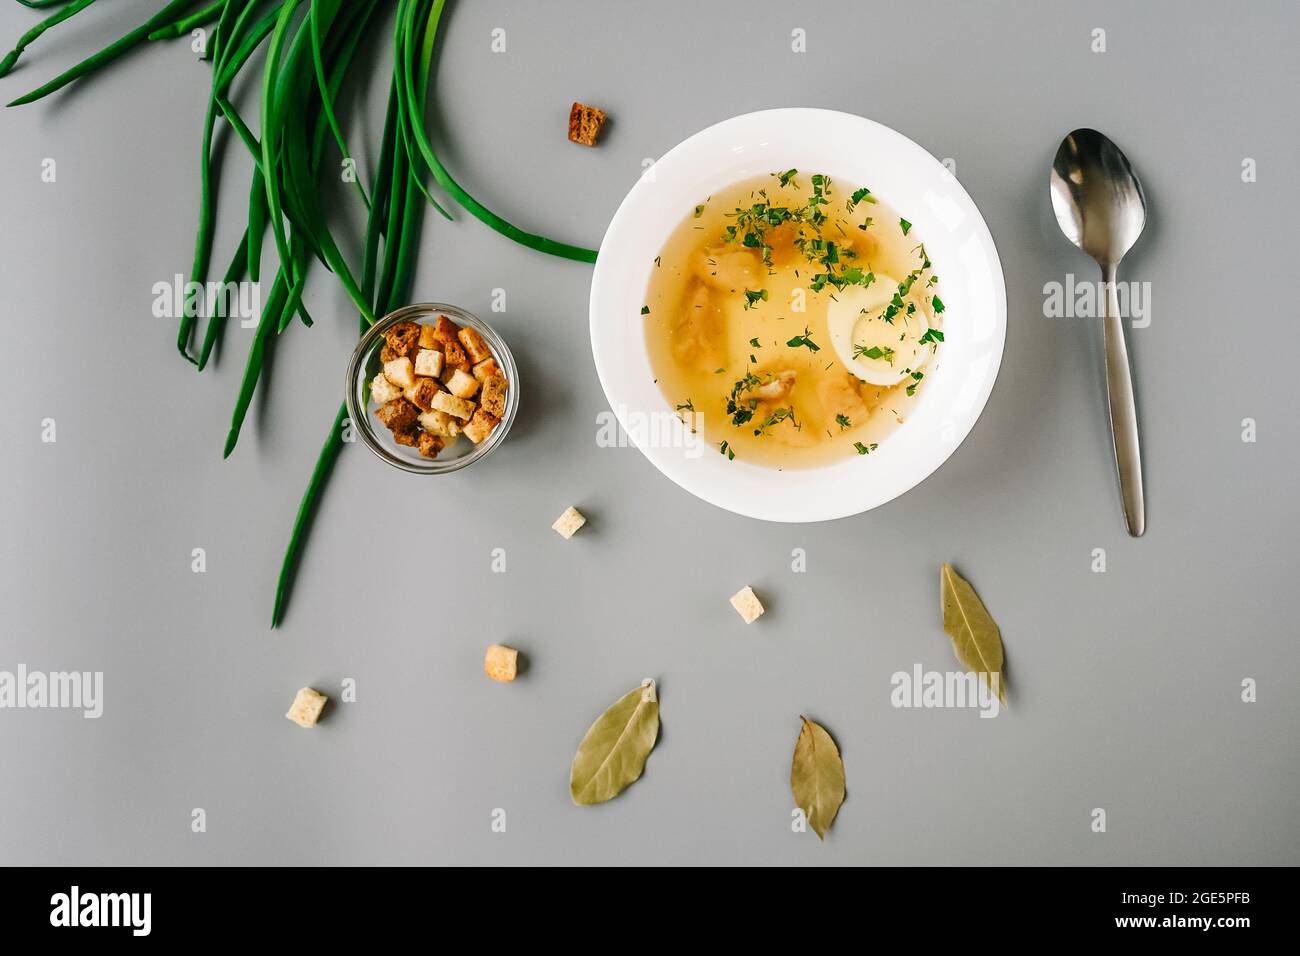 Soupe de nouilles de poulet avec légumes dans une assiette blanche. Cuillère, oignon vert et craquelins autour de l'assiette. Vue de dessus. Banque D'Images